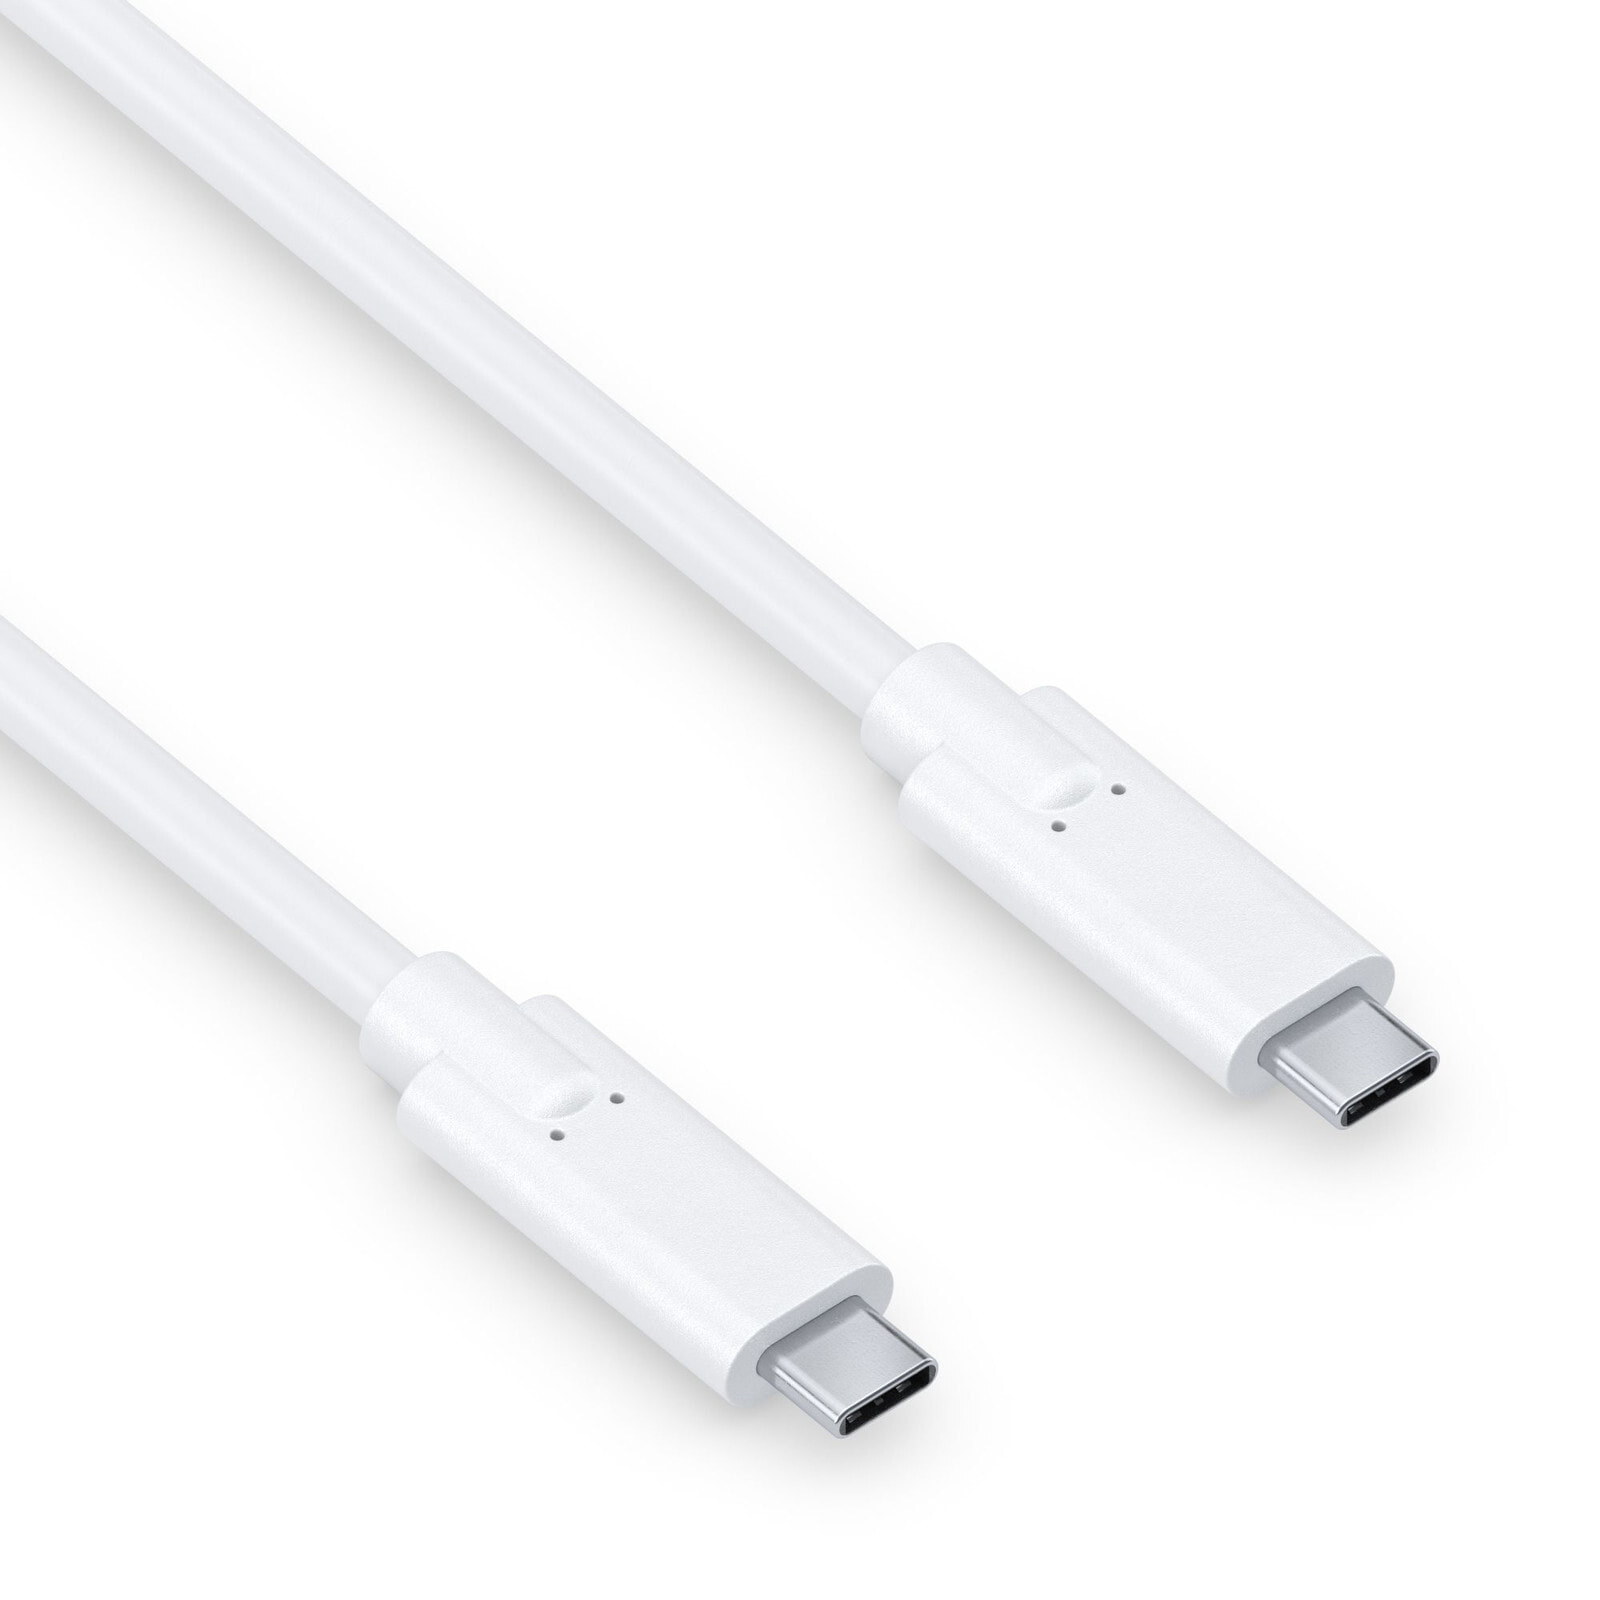 PureLink IS2500-010 USB кабель 1 m USB 3.2 Gen 1 (3.1 Gen 1) USB C Белый